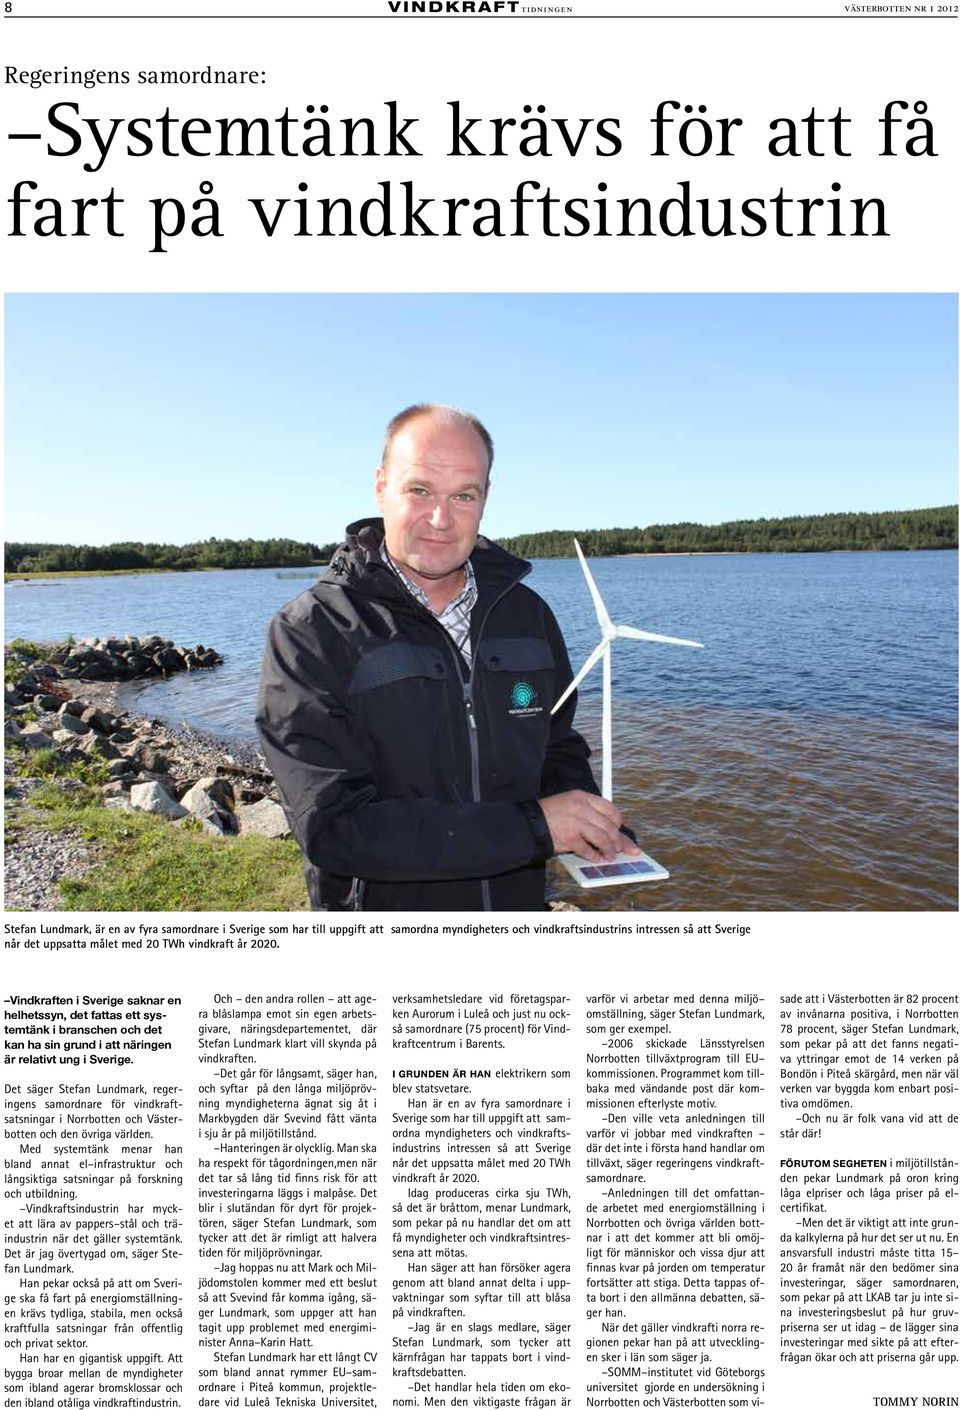 Vindkraften i Sverige saknar en helhetssyn, det fattas ett systemtänk i branschen och det kan ha sin grund i att näringen är relativt ung i Sverige.